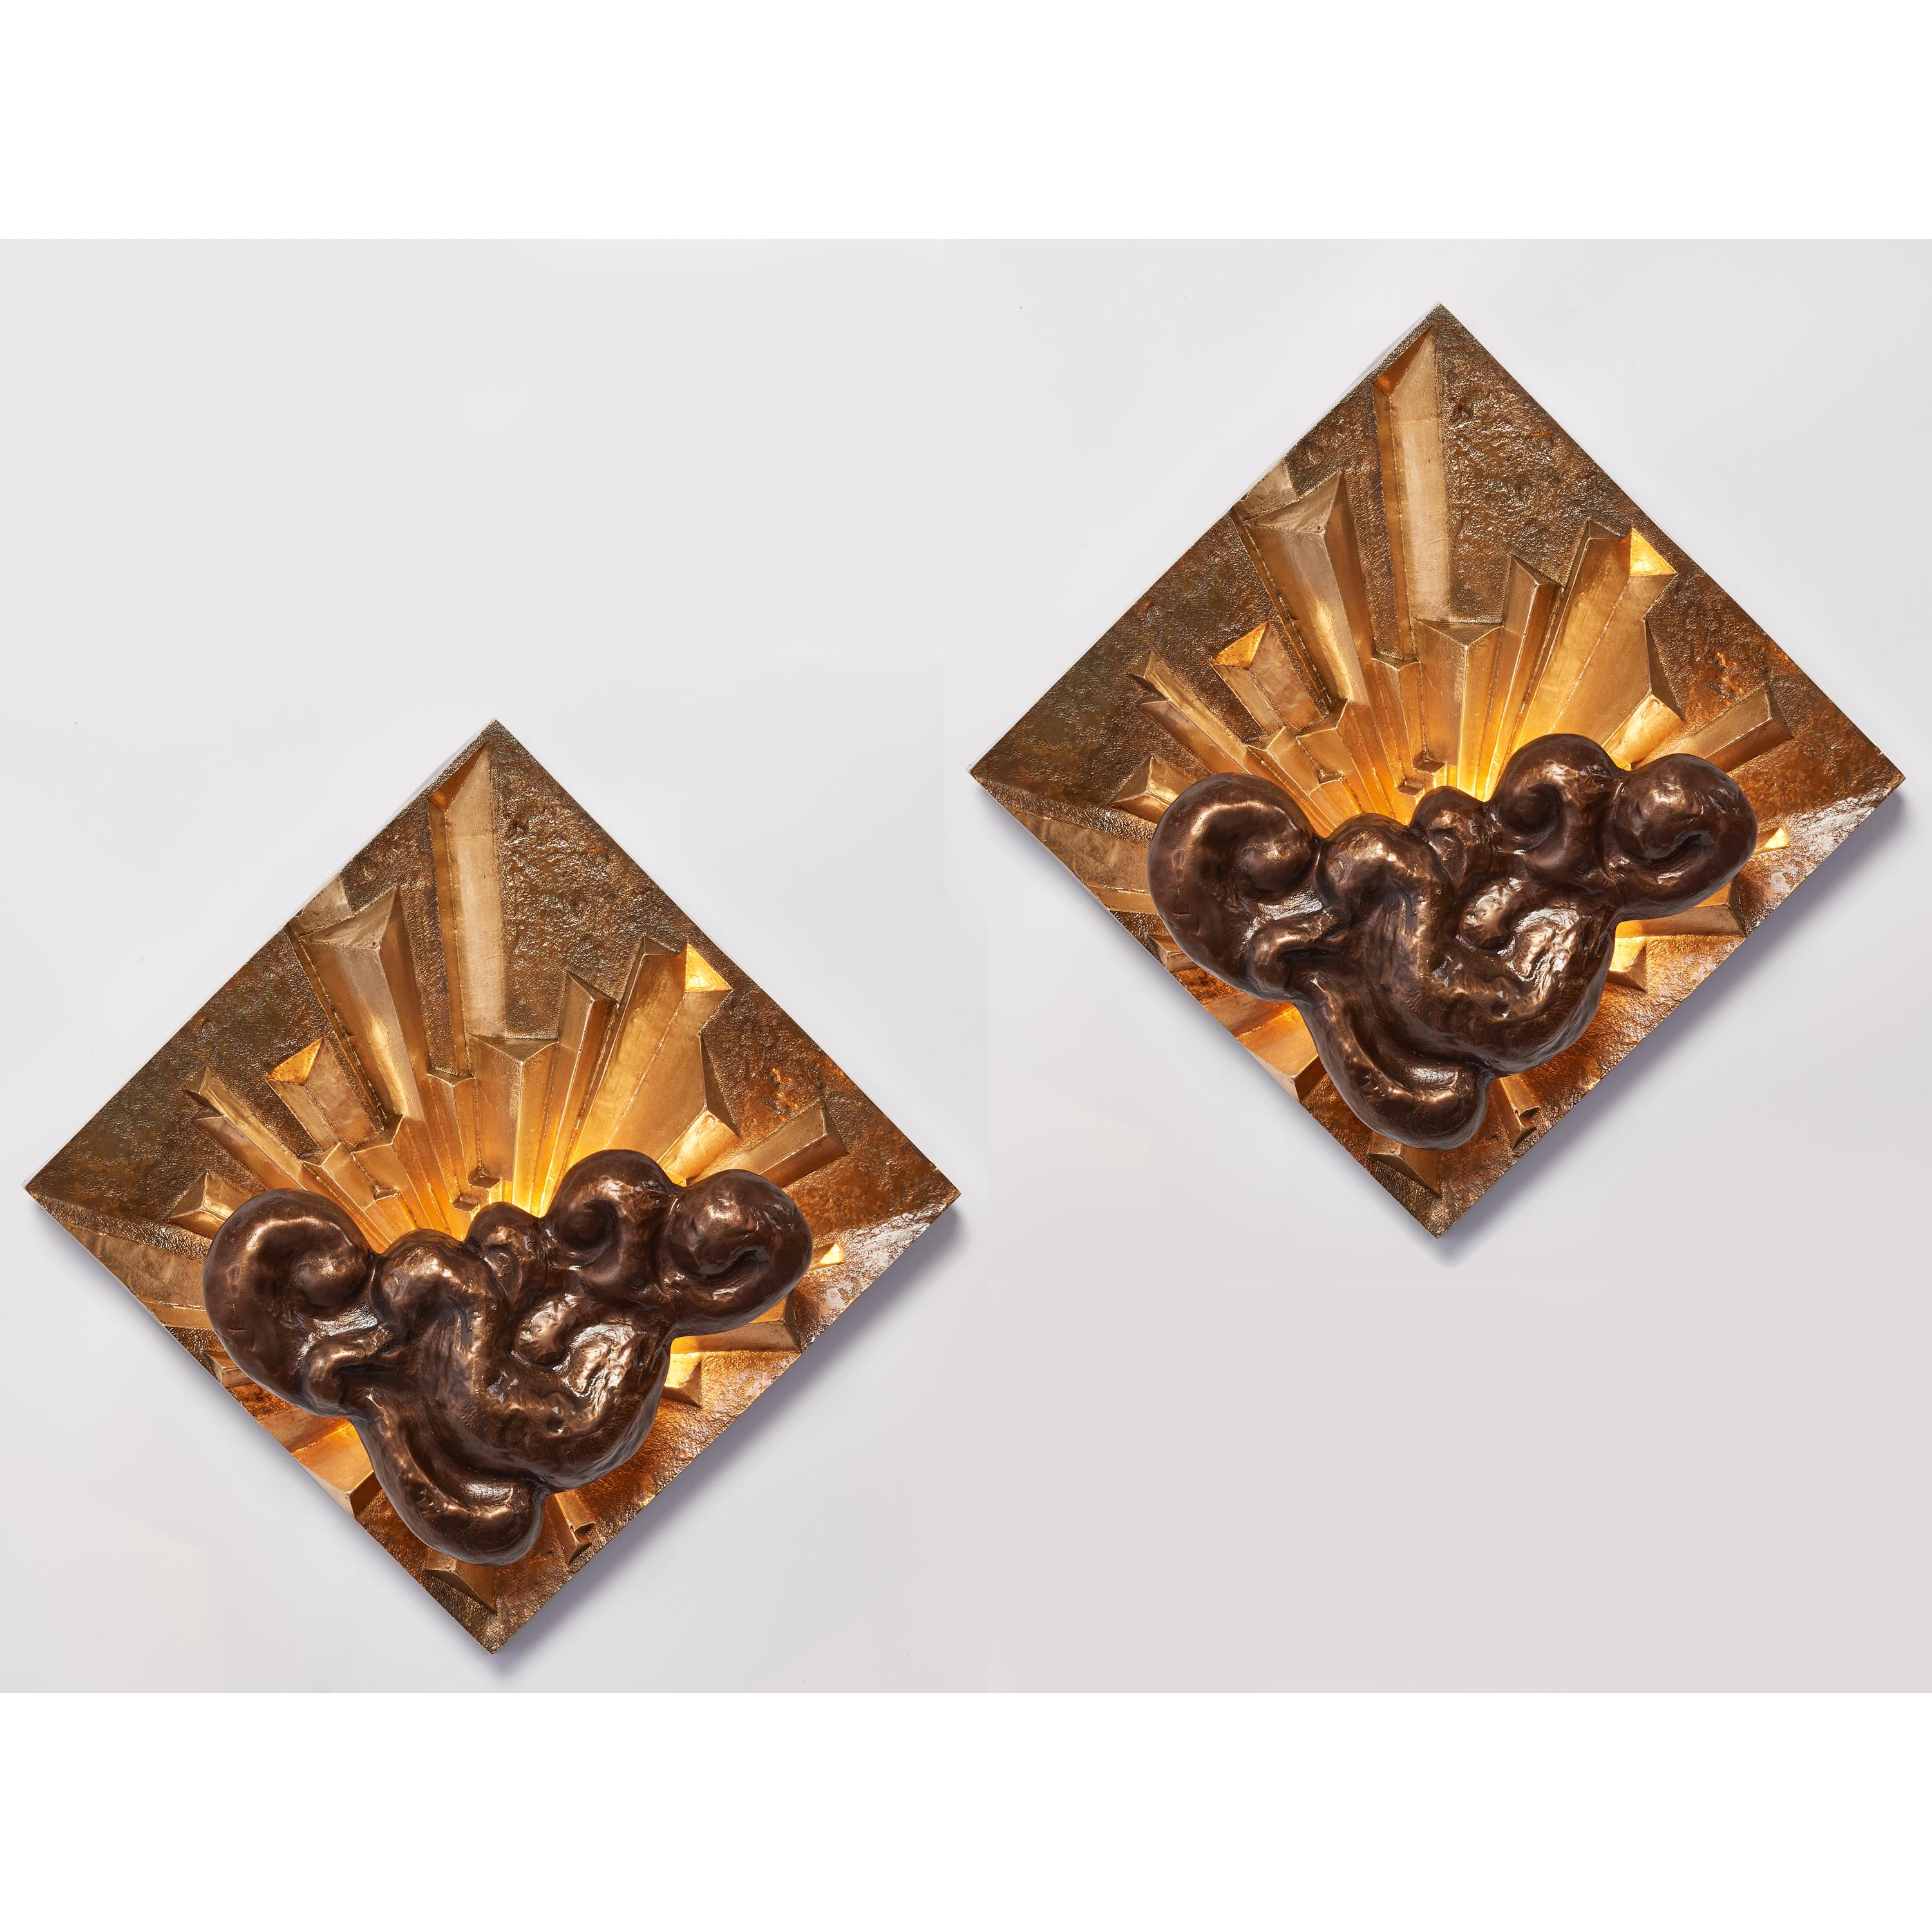 FRANKREICH, 1970er Jahre
Ein atemberaubendes und seltenes Paar wunderschön modellierter Bronzeleuchter in Hochrelief, mit kontrastierenden brünierten, gemeißelten und oxidierten Oberflächen mit Lichtblitzen, die hinter turbulenten Wolken